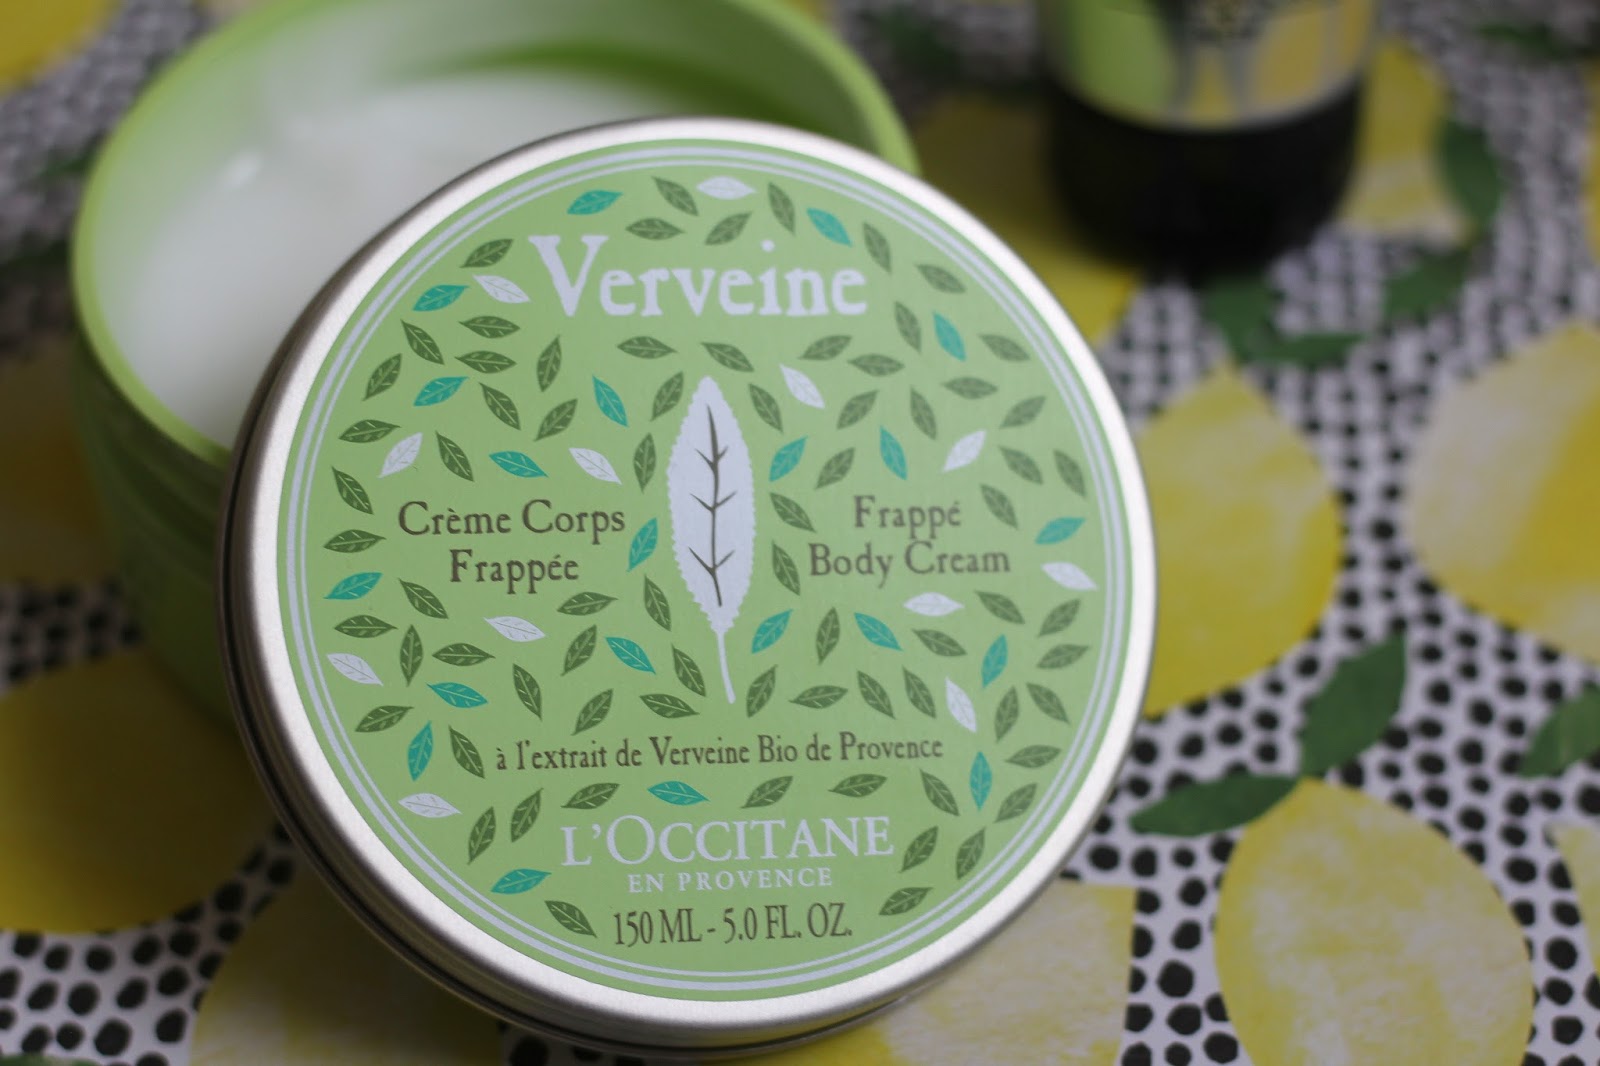 LOccitane Verbena Frappe Body Cream